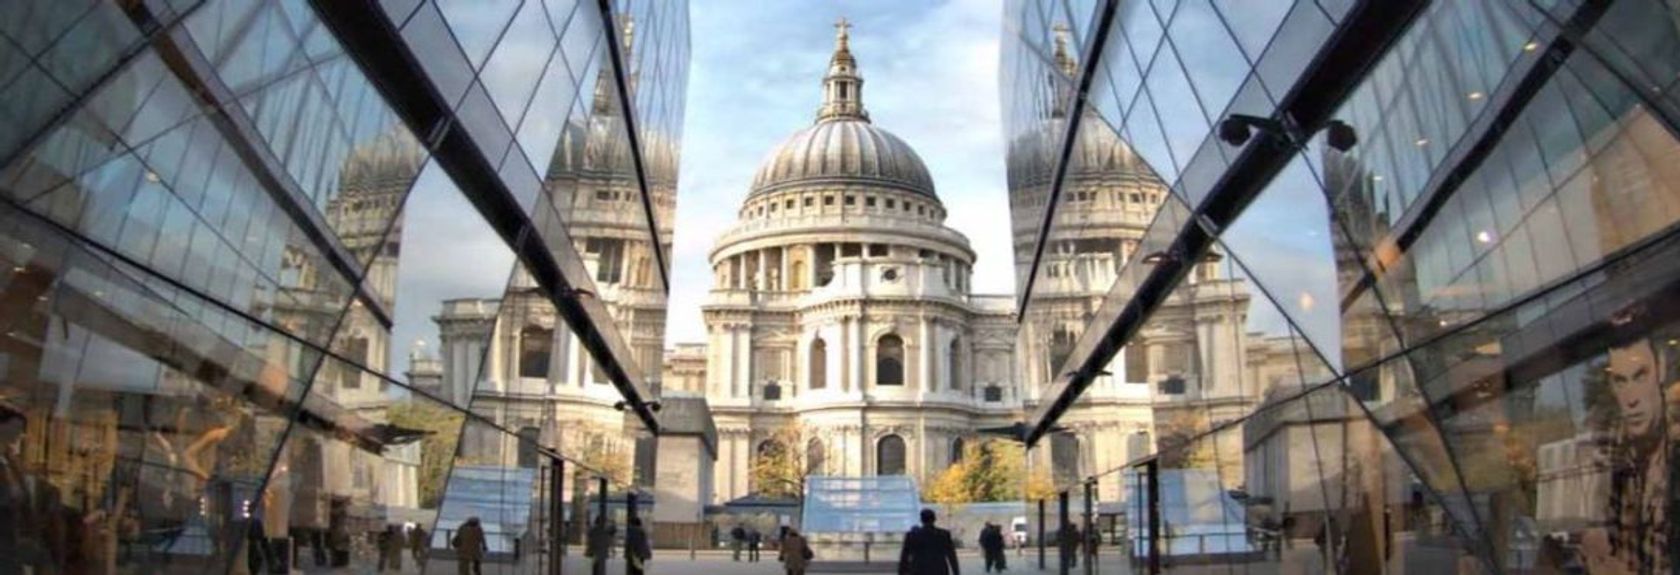 No centro de Londres, em Ludgate Hill fica a St Paul's Cathedral com sua famosa e impressionante cúpula